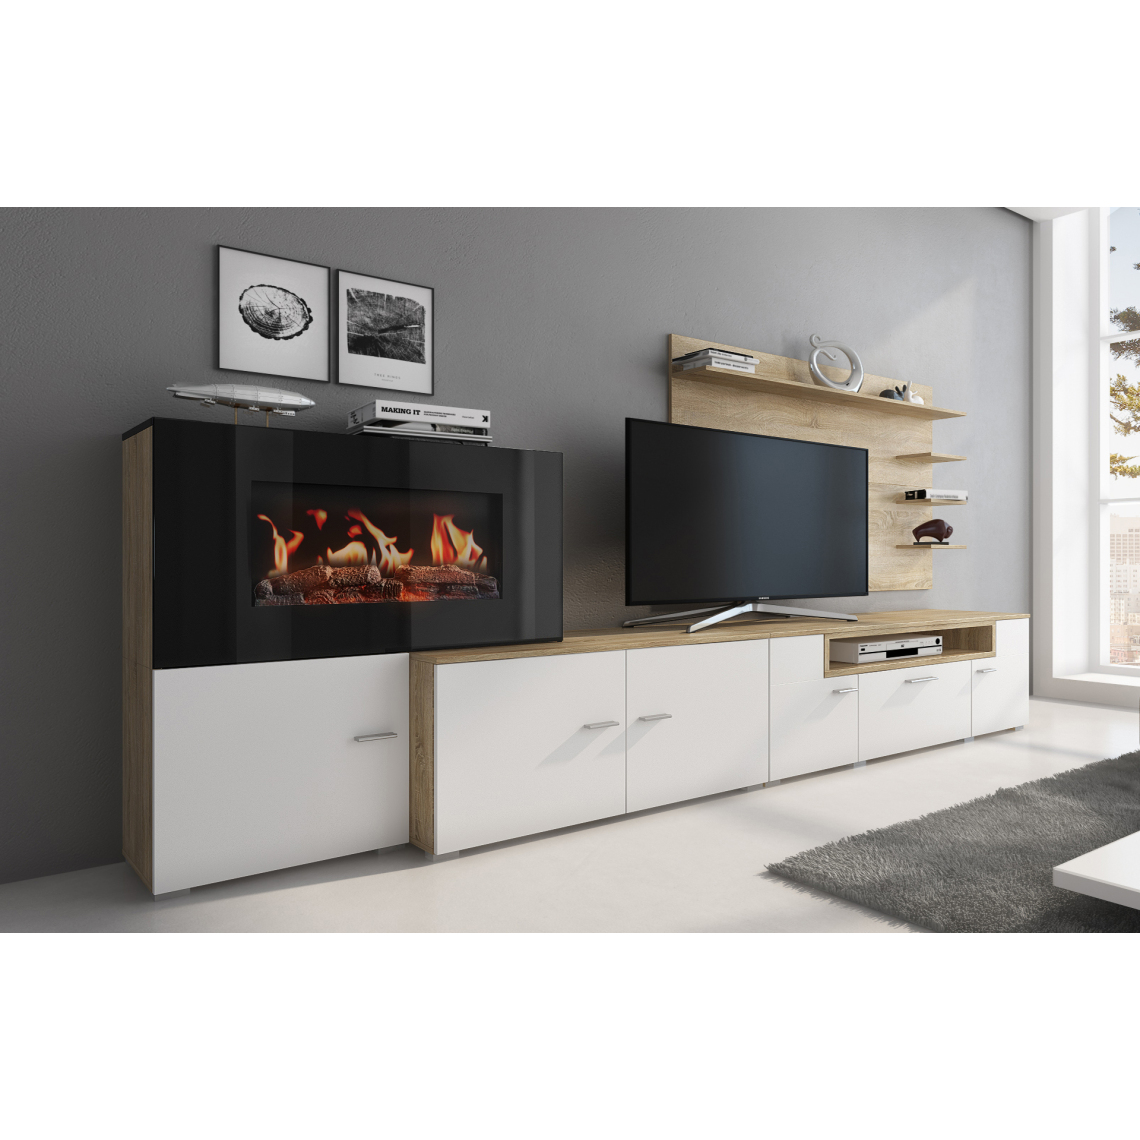 Skraut Home - Meuble+feu électrique,Blanc -Chêne clair,290x170x45 - Meubles TV, Hi-Fi